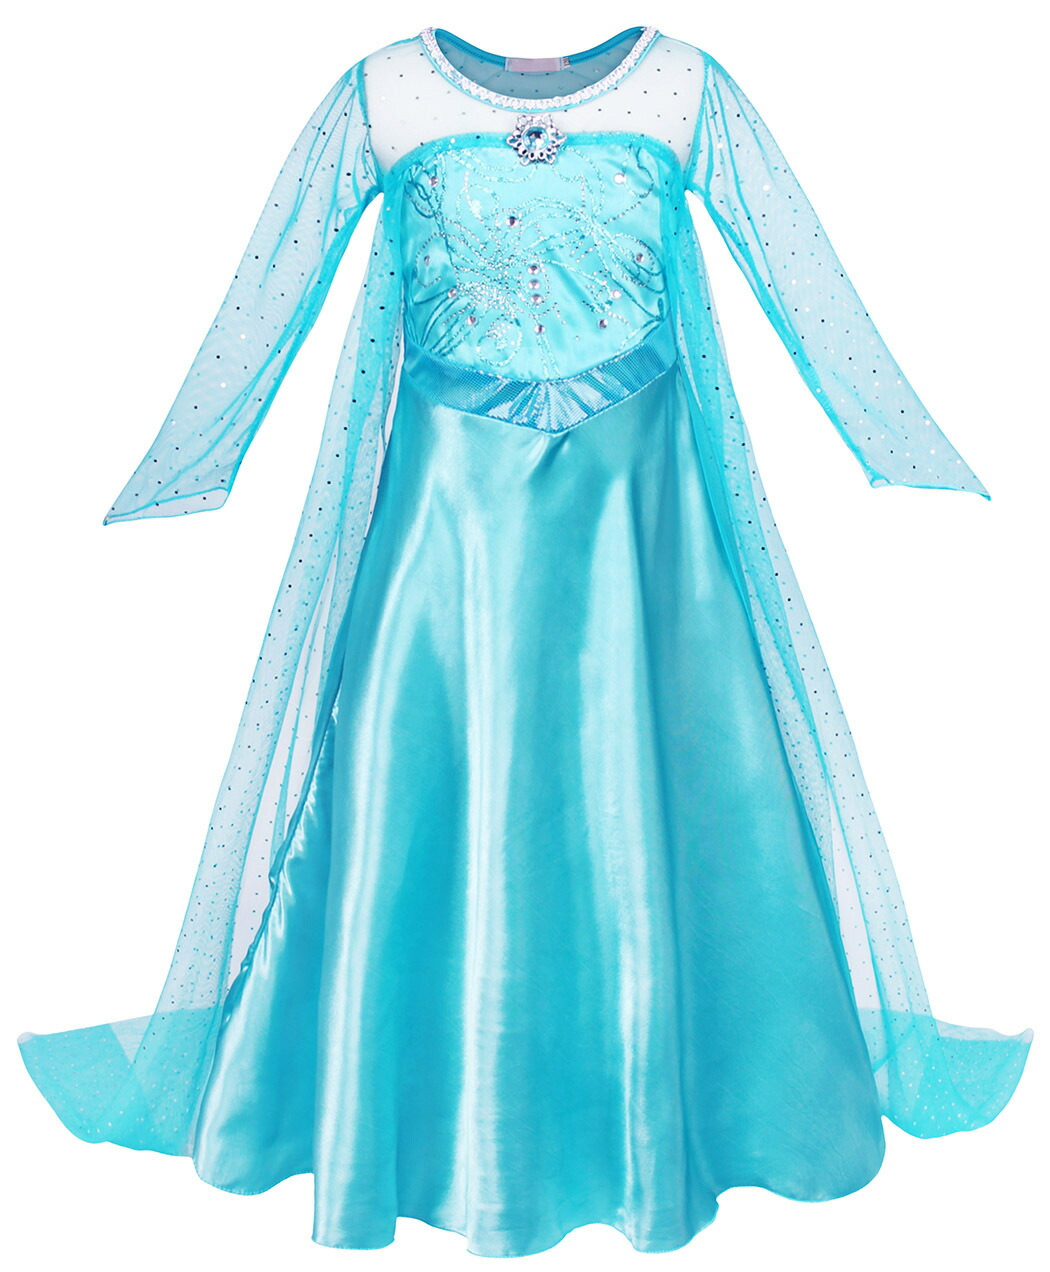 プリンセス ドレス 子供 仮装 女の子 コスチューム 衣装 コスプレ プレゼント リトルプリンセス 水色 青 ブルー お姫様 086